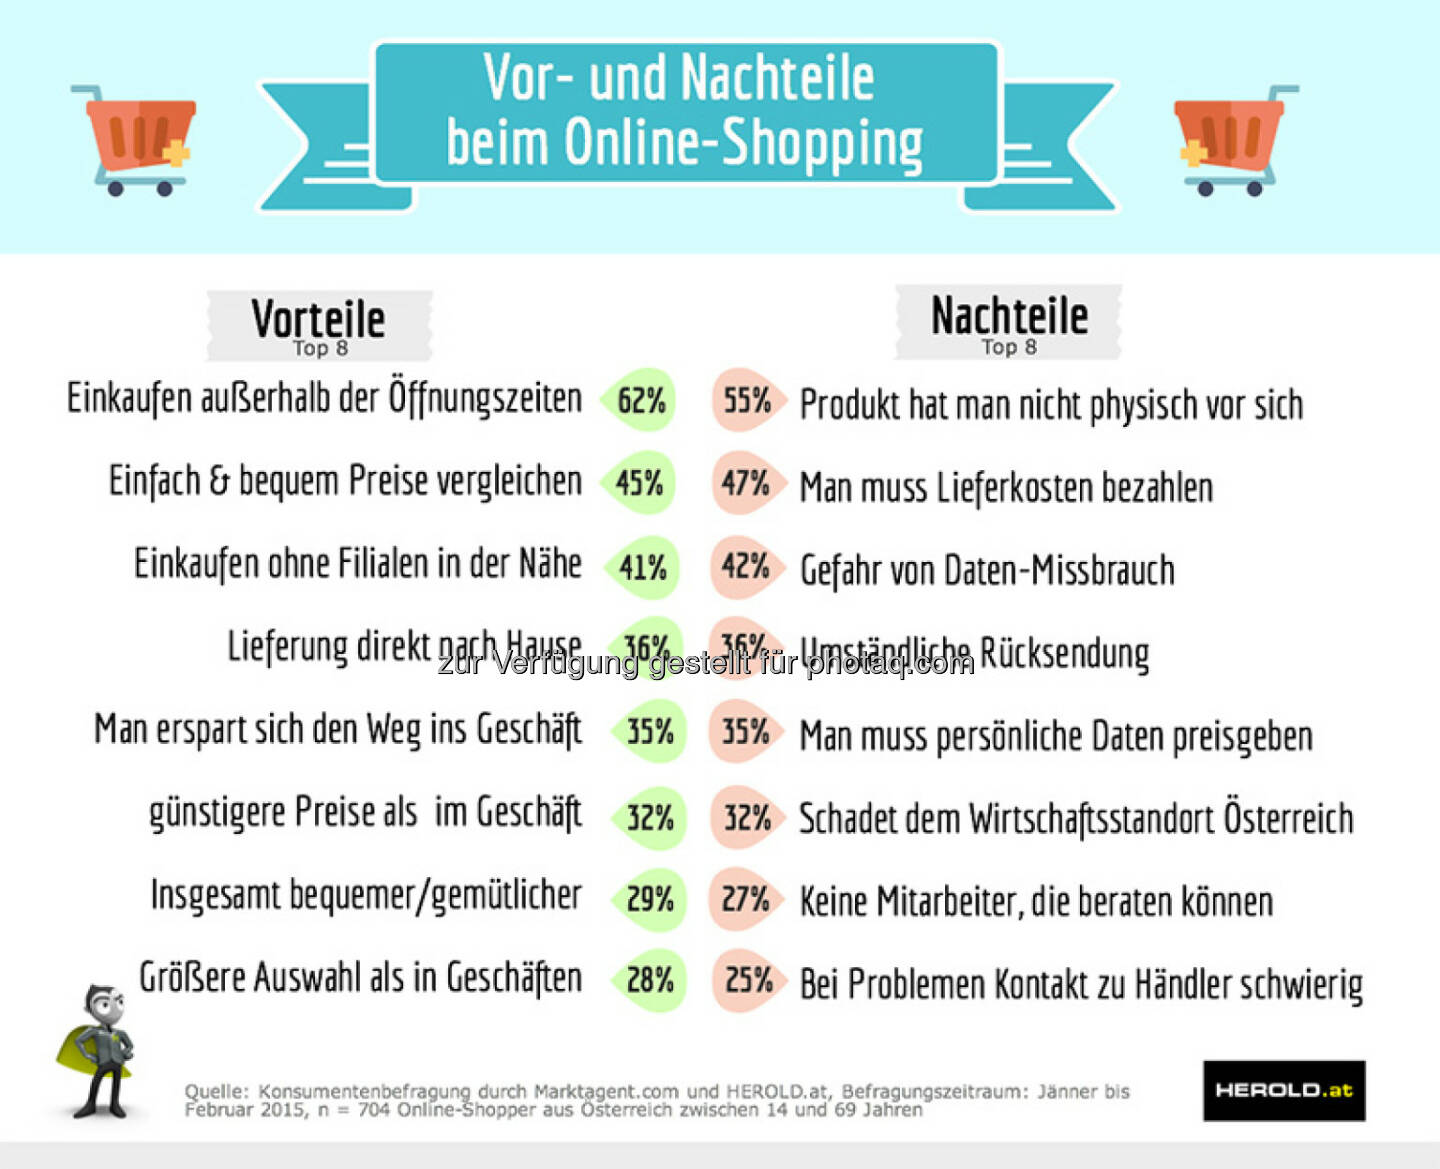 Herold Business Data GmbH: Marketagent.com und Herold präsentieren den Shopper-Report 2015 – online vs. offline